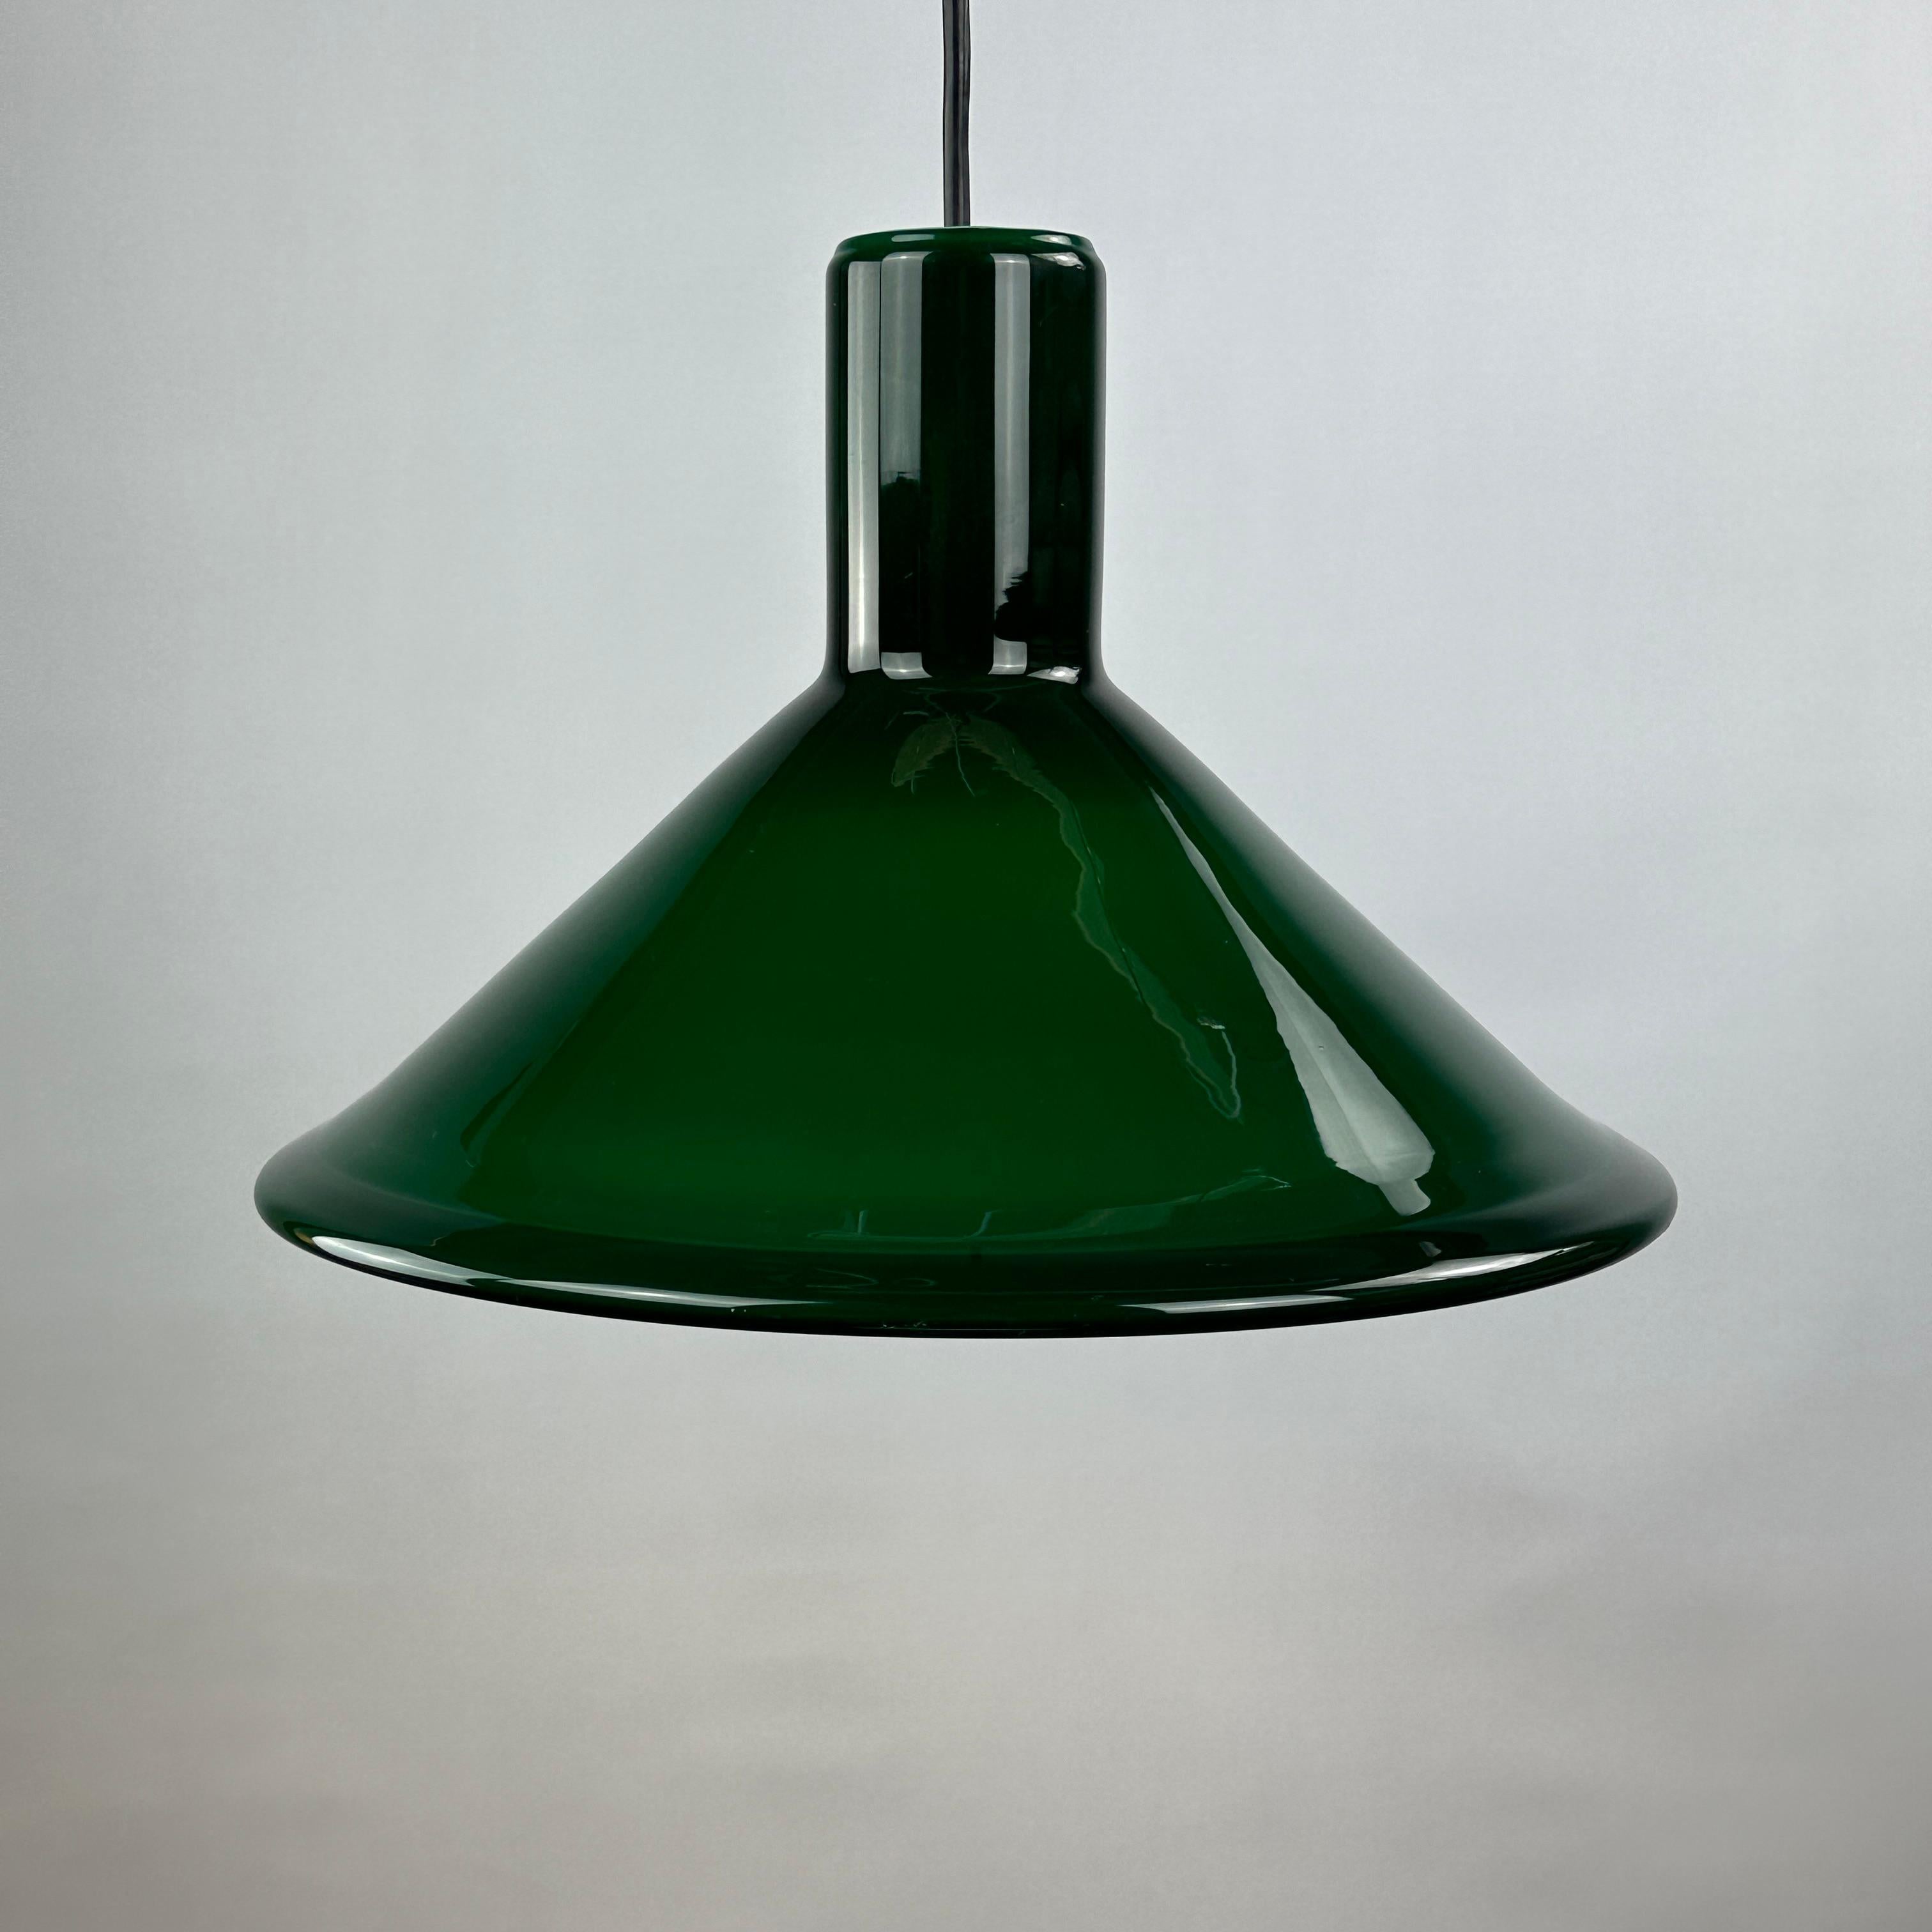 Lampe suspendue en verre épais vert, fraîche et élégante, créée par le danois Michael Bang pour Holmegaard. Ce modèle s'appelle P & T PENDEL et a été conçu en 1972.

Verre opalin épais de haute qualité, donnant une lumière très agréable. Holmegaard